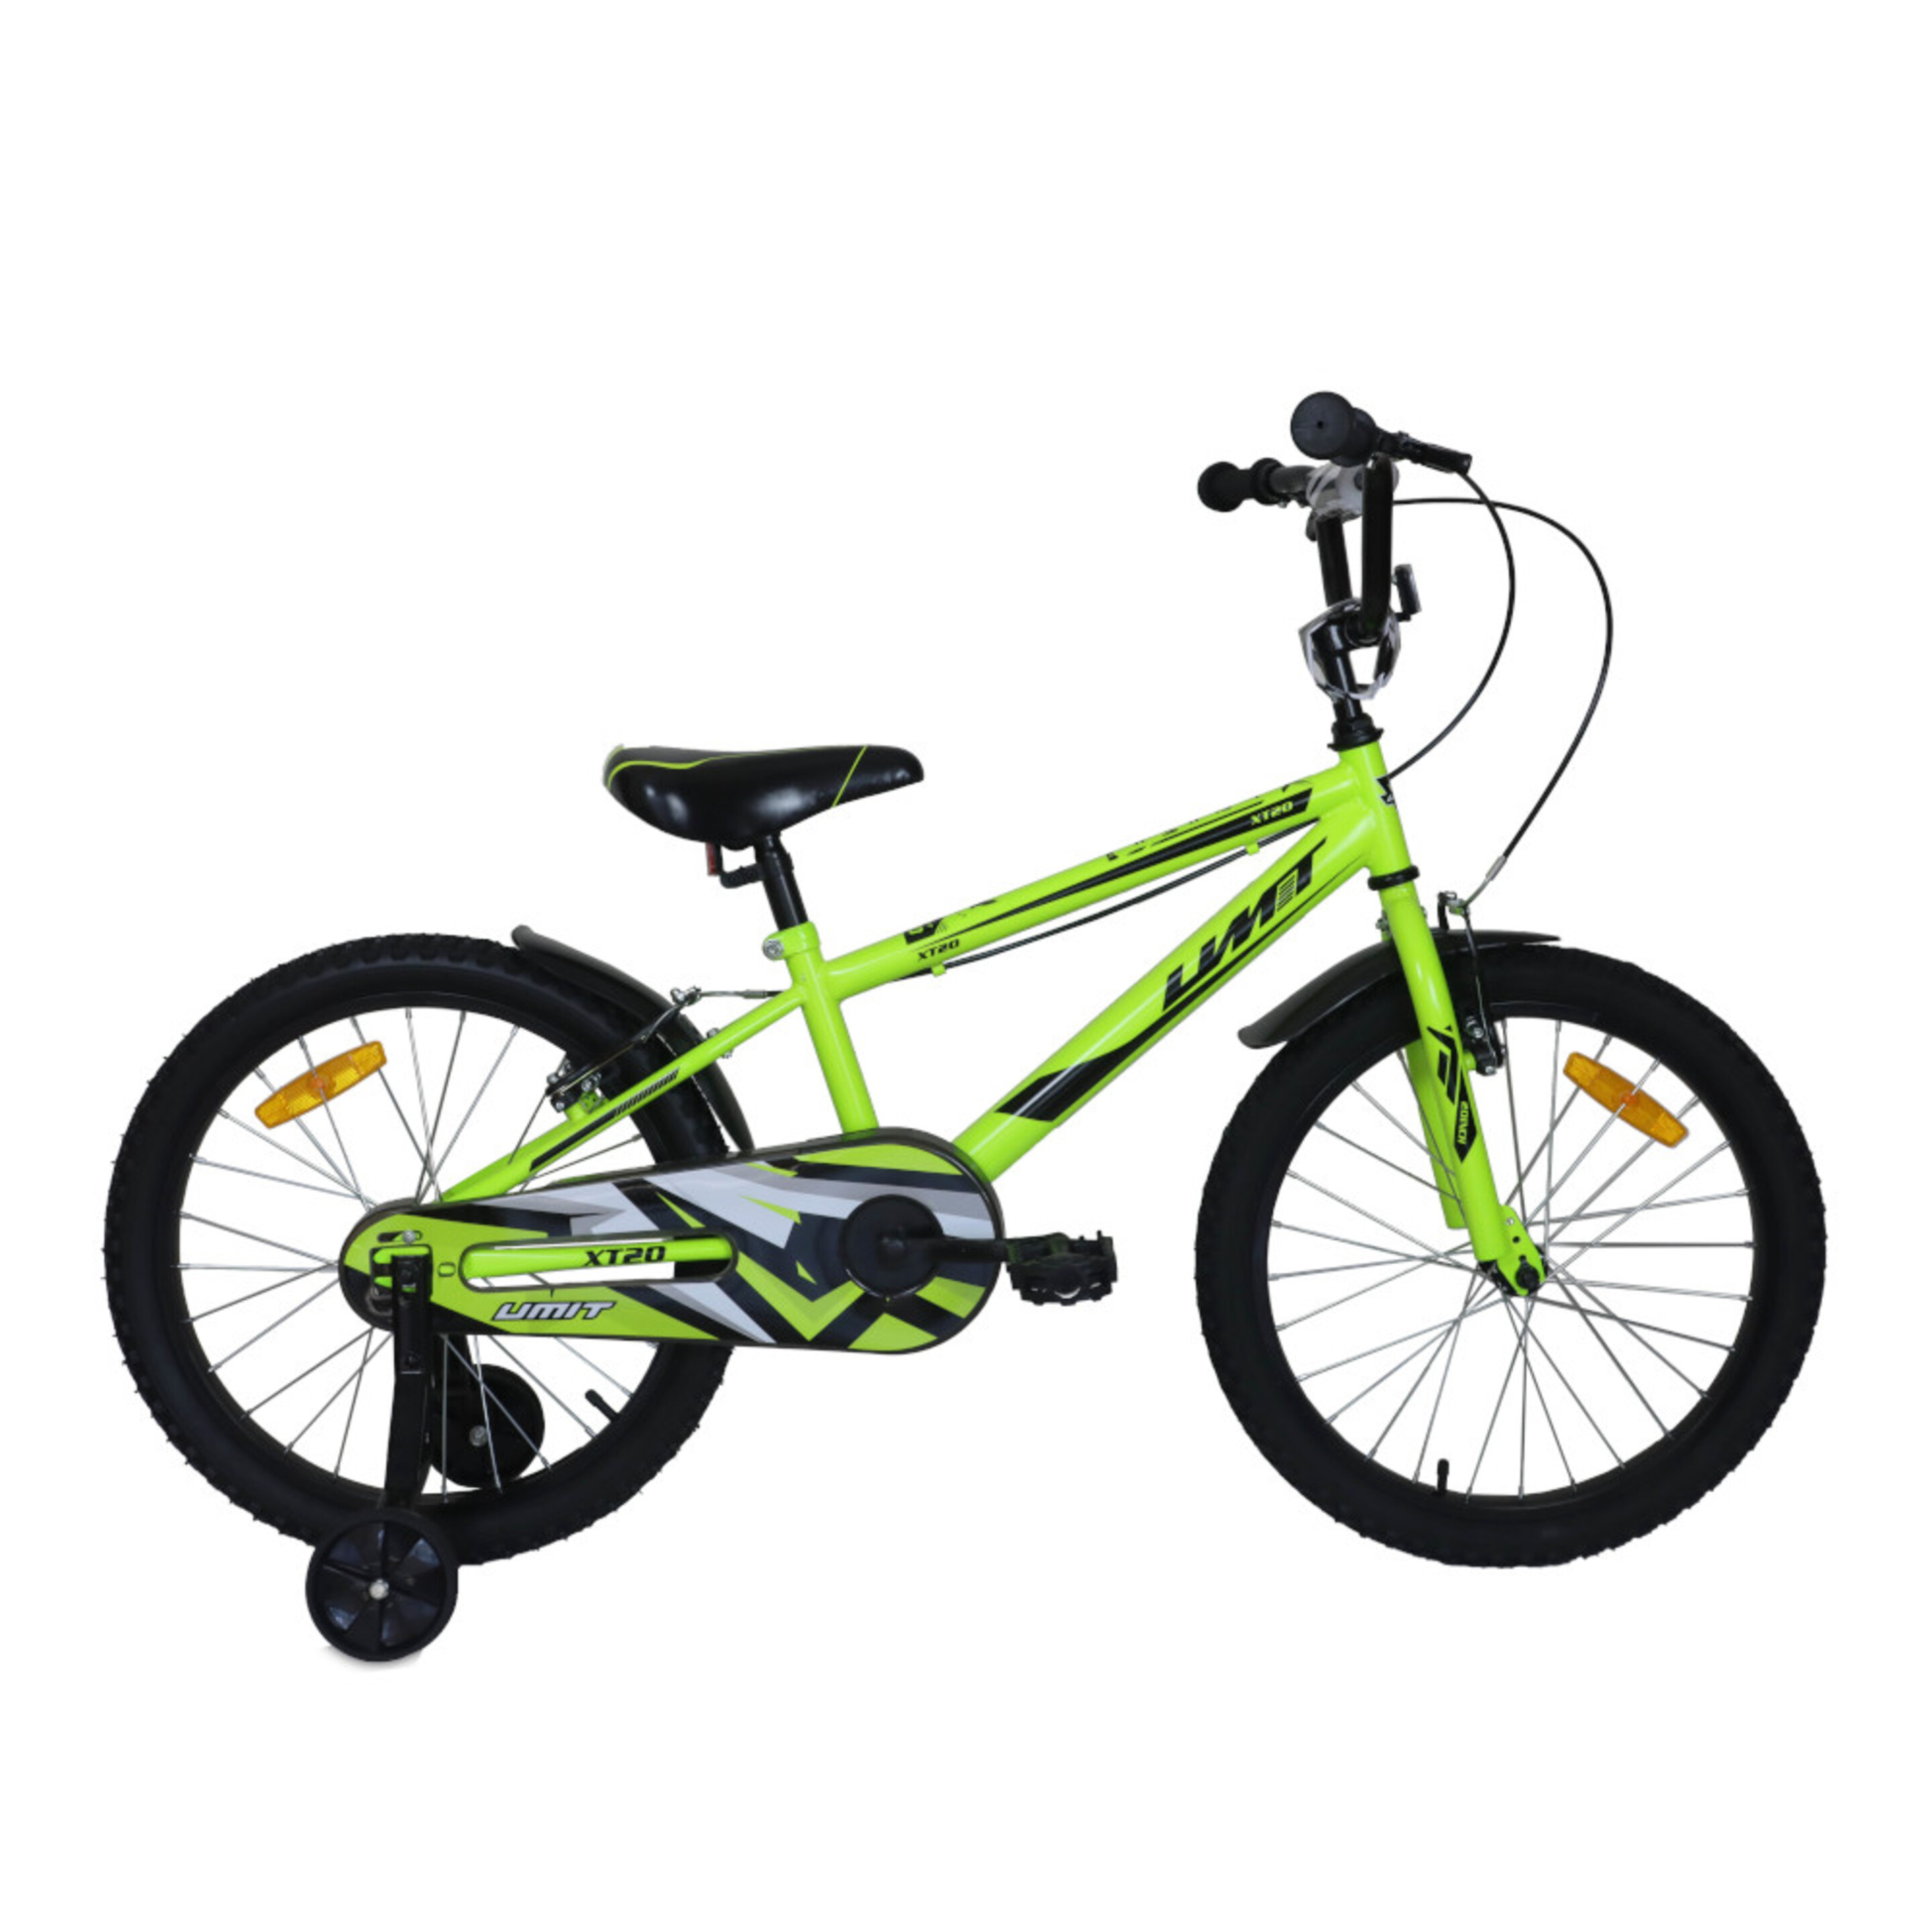 Xt20 Mountain Bike Infantil Verde - verde - 